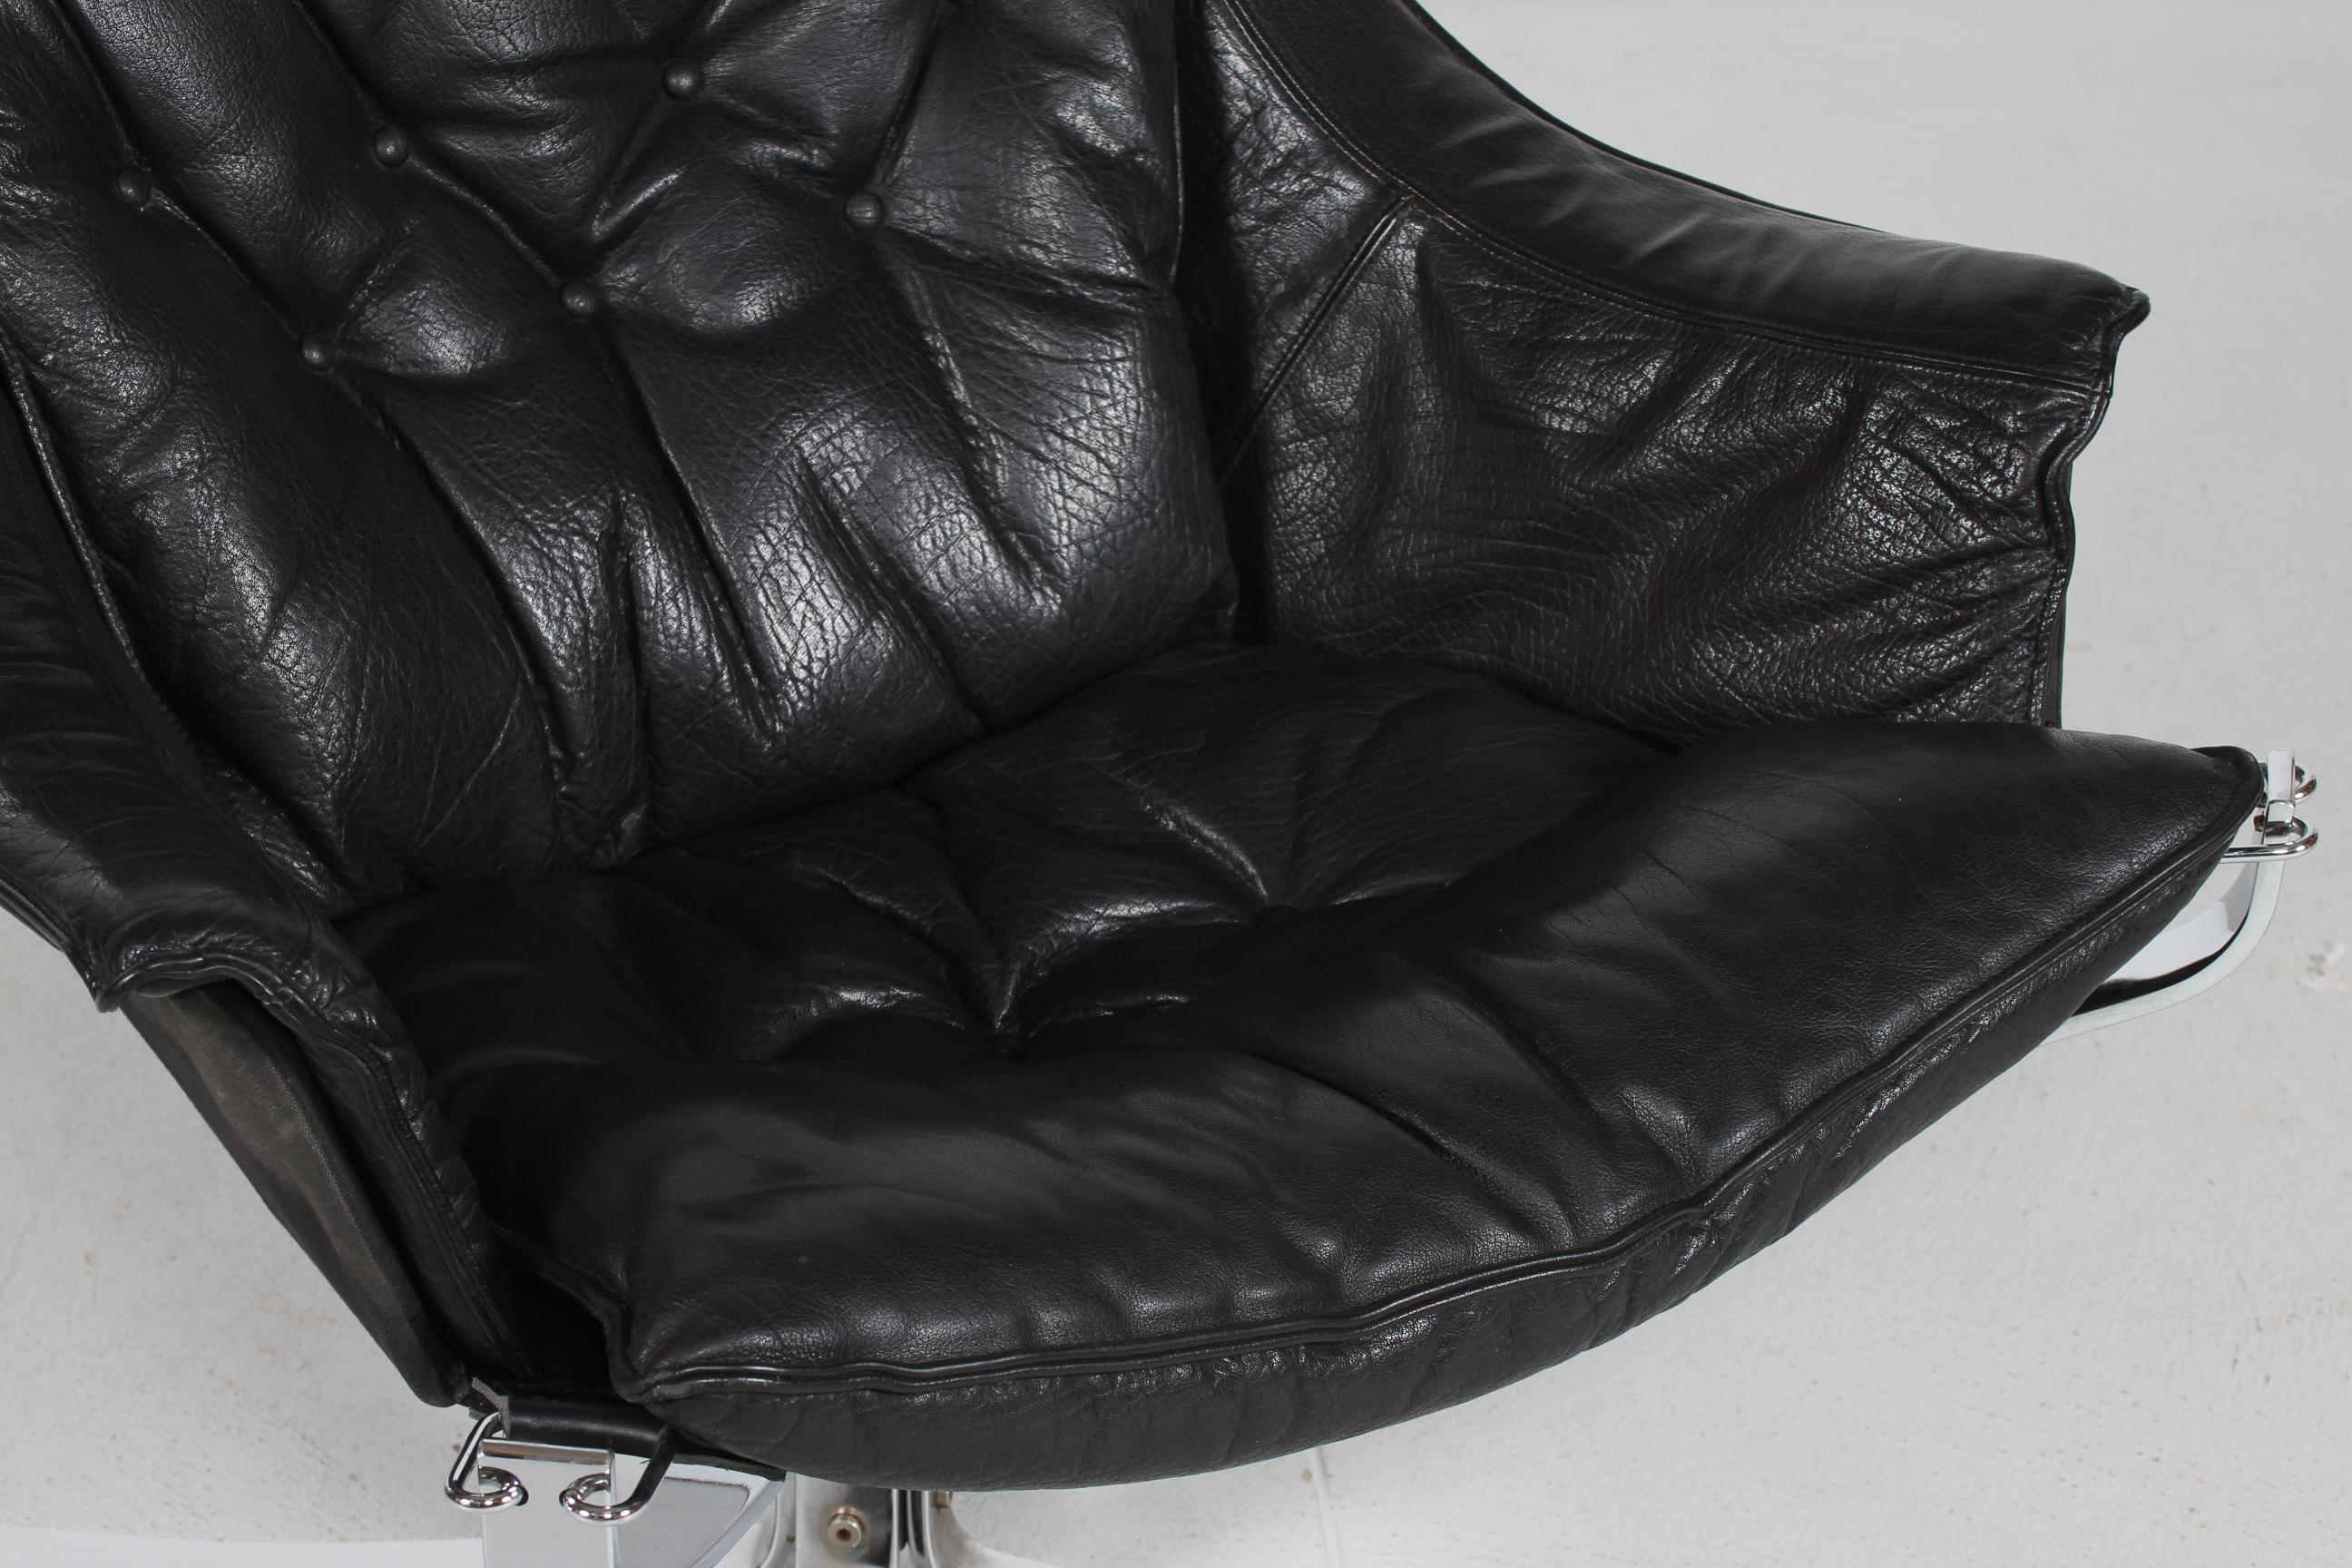 Rare chaise longue Falcon avec accoudoir et base en acier chromé.
Les coussins sont recouverts de cuir noir véritable de très bonne qualité.
La chaise a été fabriquée par le Suédois Vatne Møbler dans les années 1970.